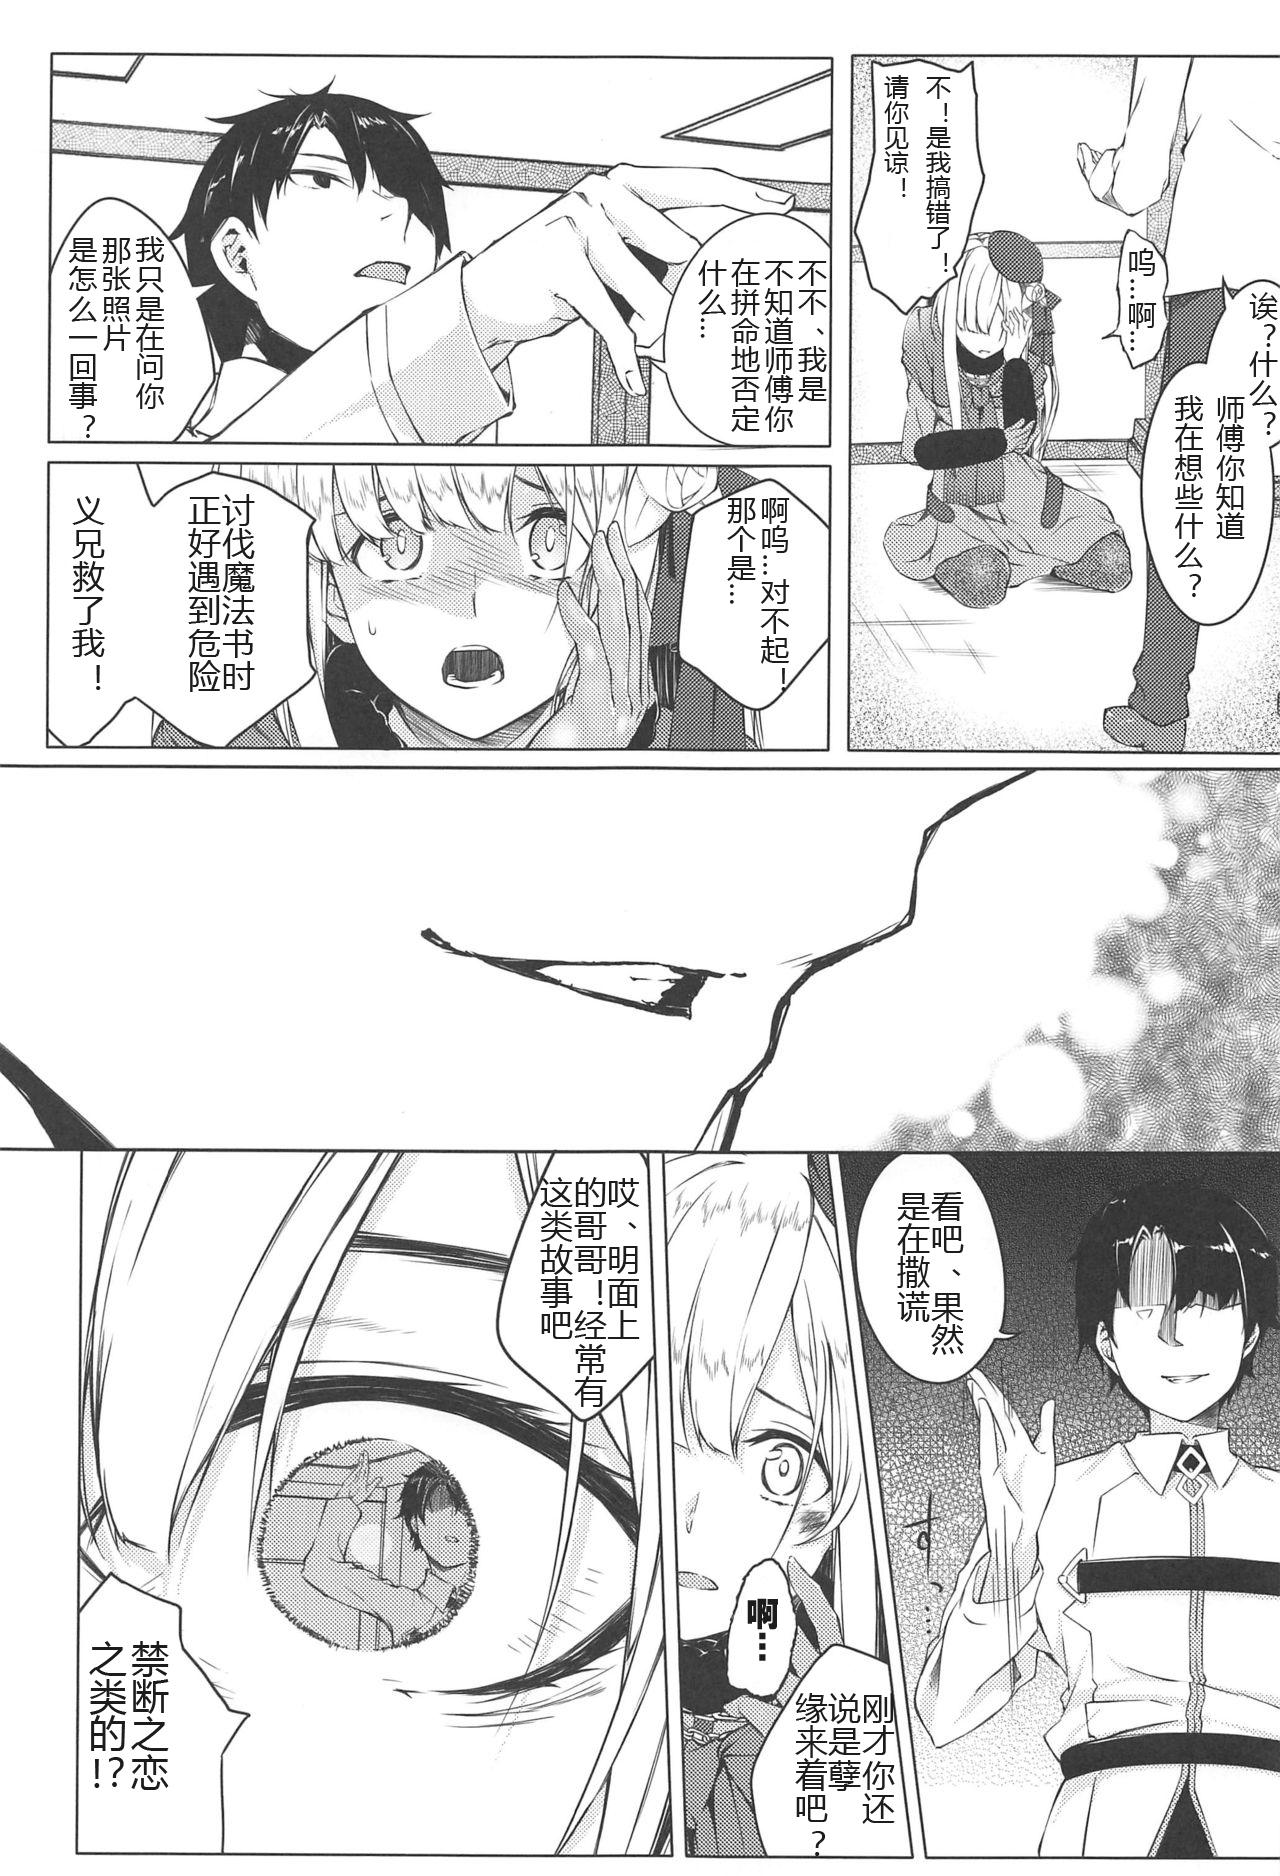 Punishment Konna Koto, Watashi no Nozomu Koto de wa Nai no Daga!? - Fate grand order One - Page 6